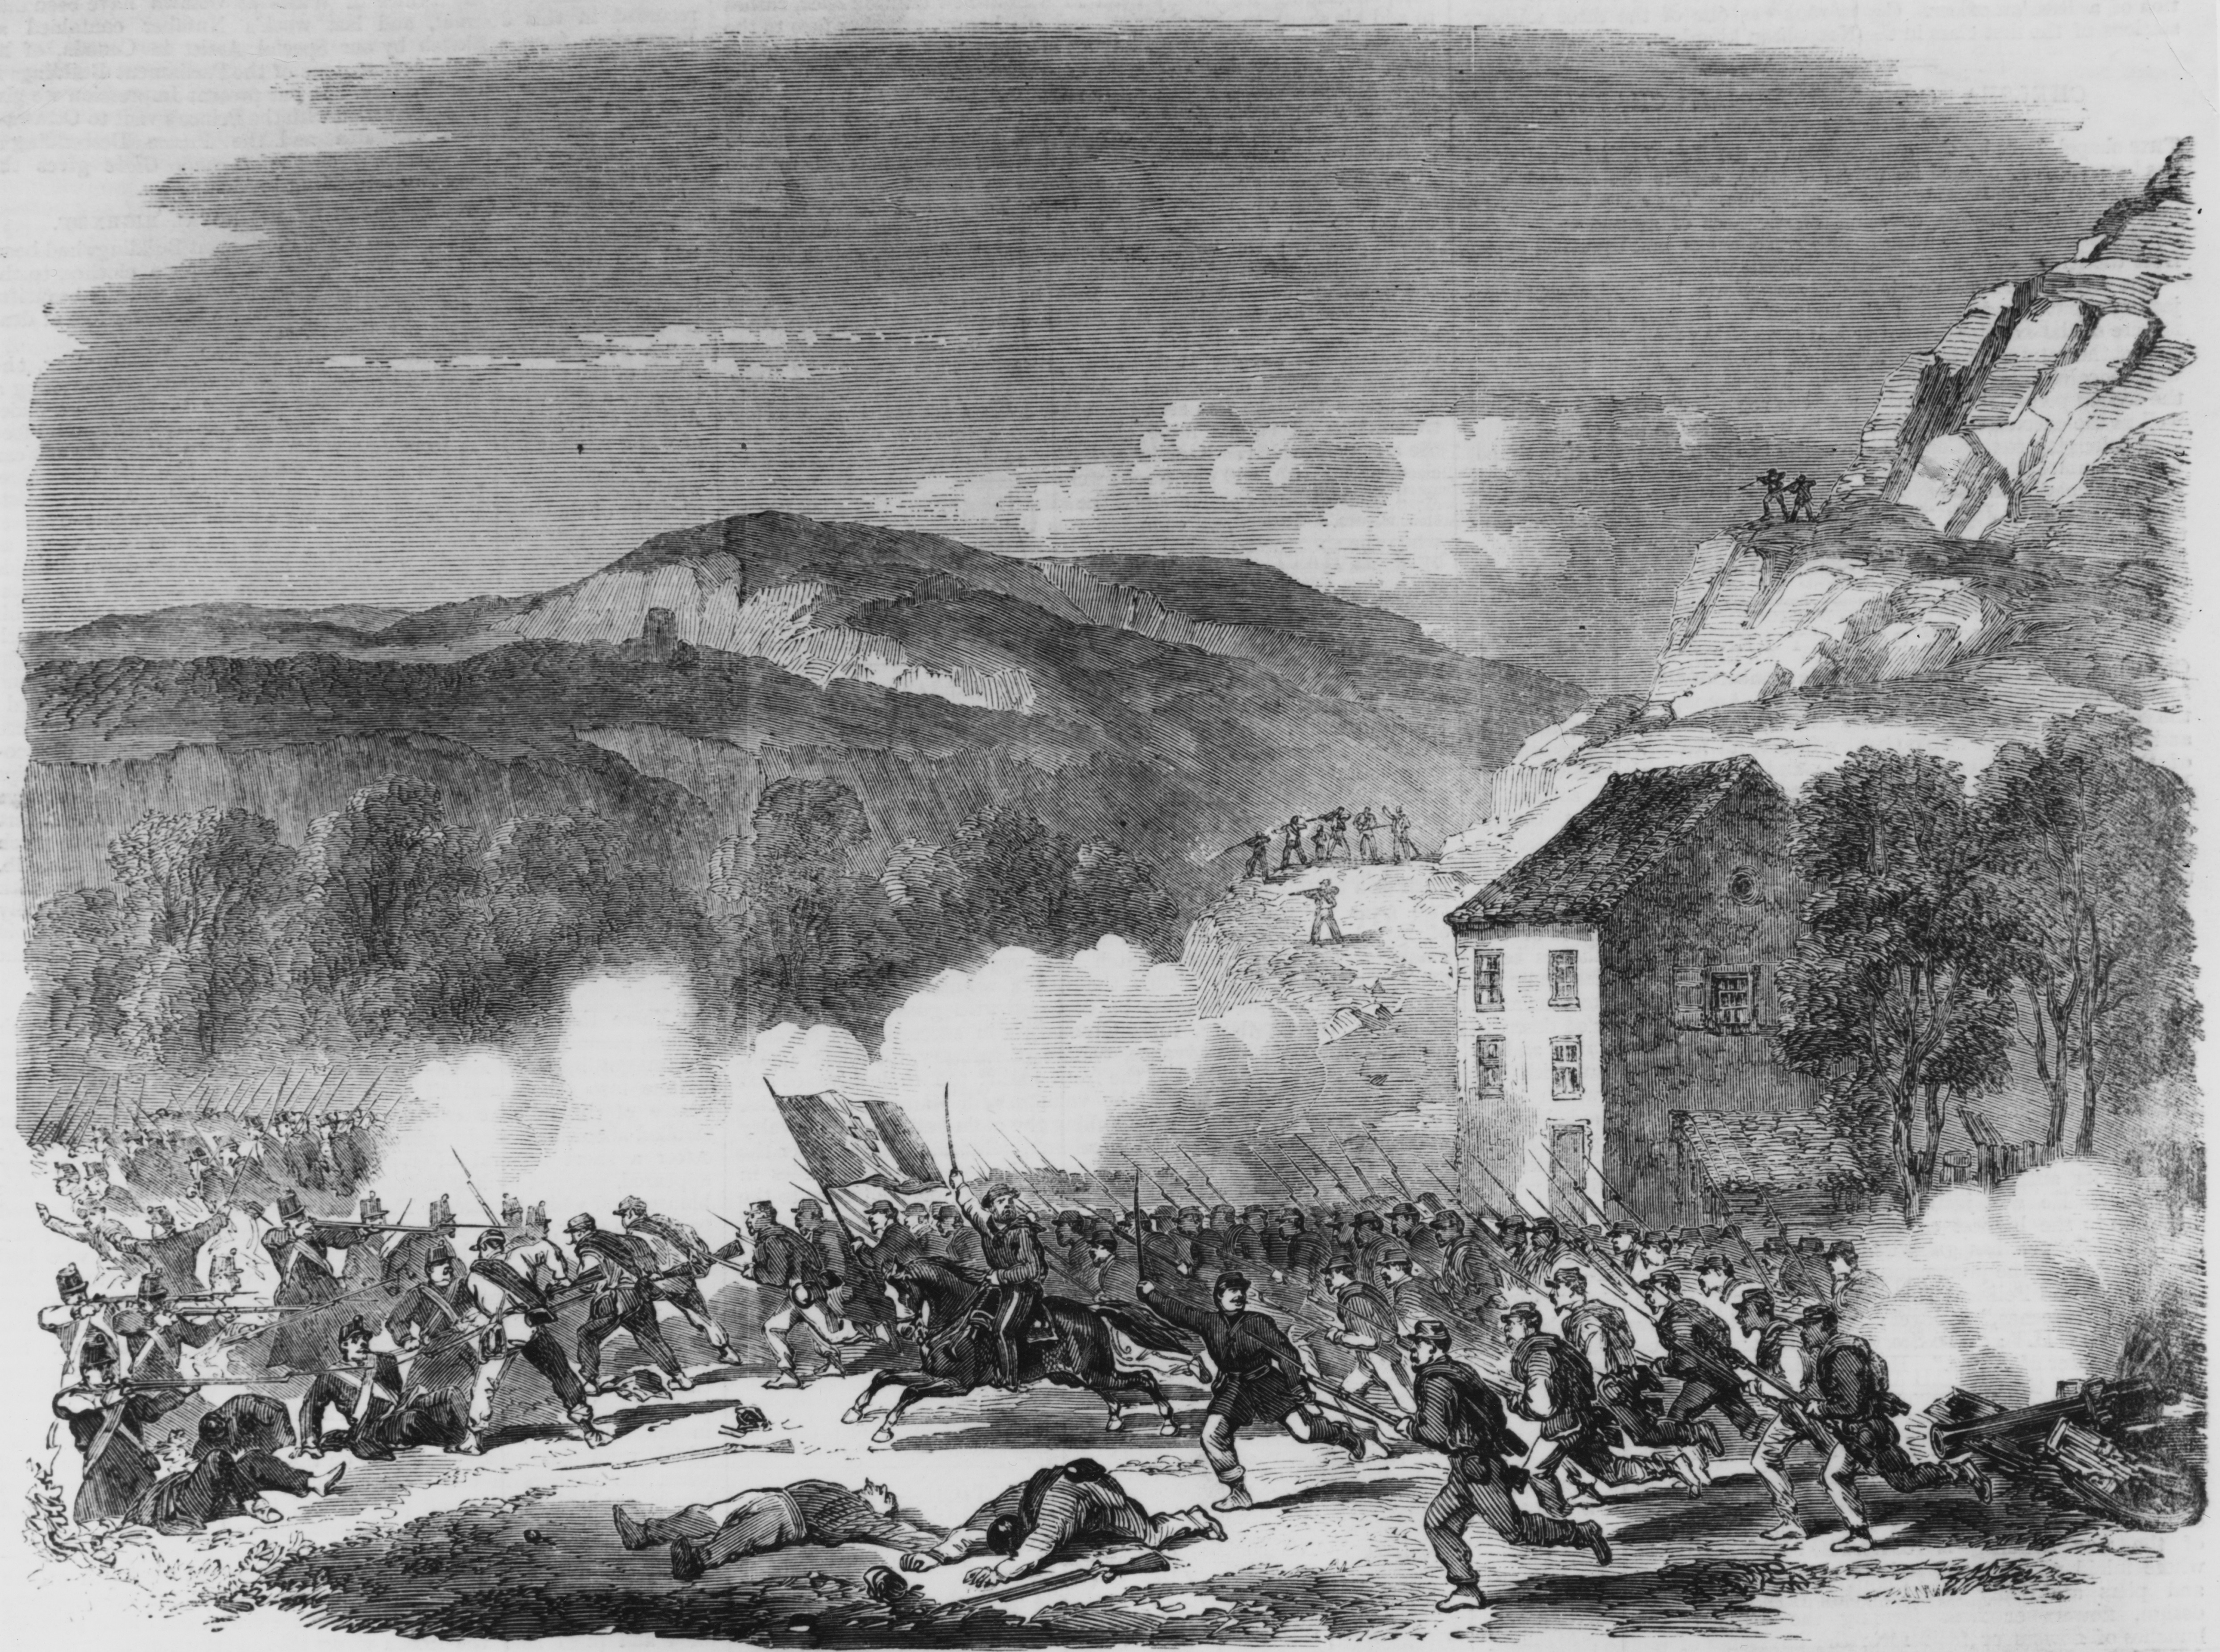 La battaglia di Volturno del 30 settembre 1860, mentre Garibaldi risale la penisola liberando il Mezzogiorno